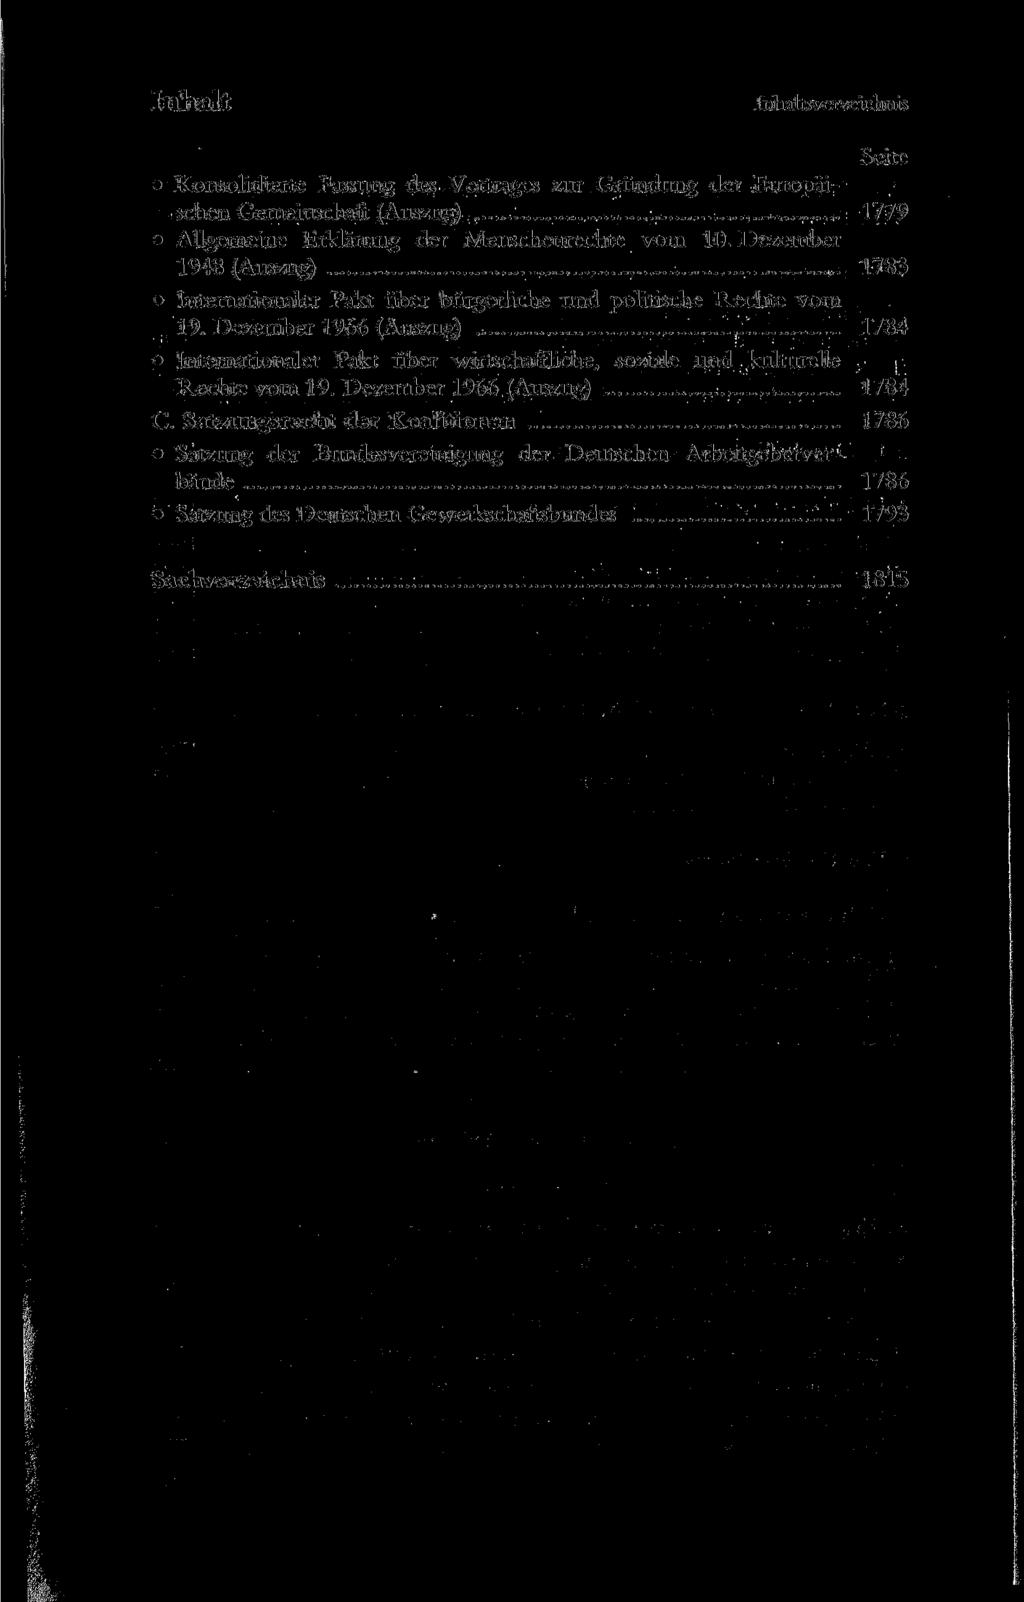 Inhalt Inhaltsverzeichnis Konsolidierte Fassung des Vertrages zur Gründung der Europäischen Gemeinschaft (Auszug) 1779 Allgemeine Erklärung der Menschenrechte vom 10.